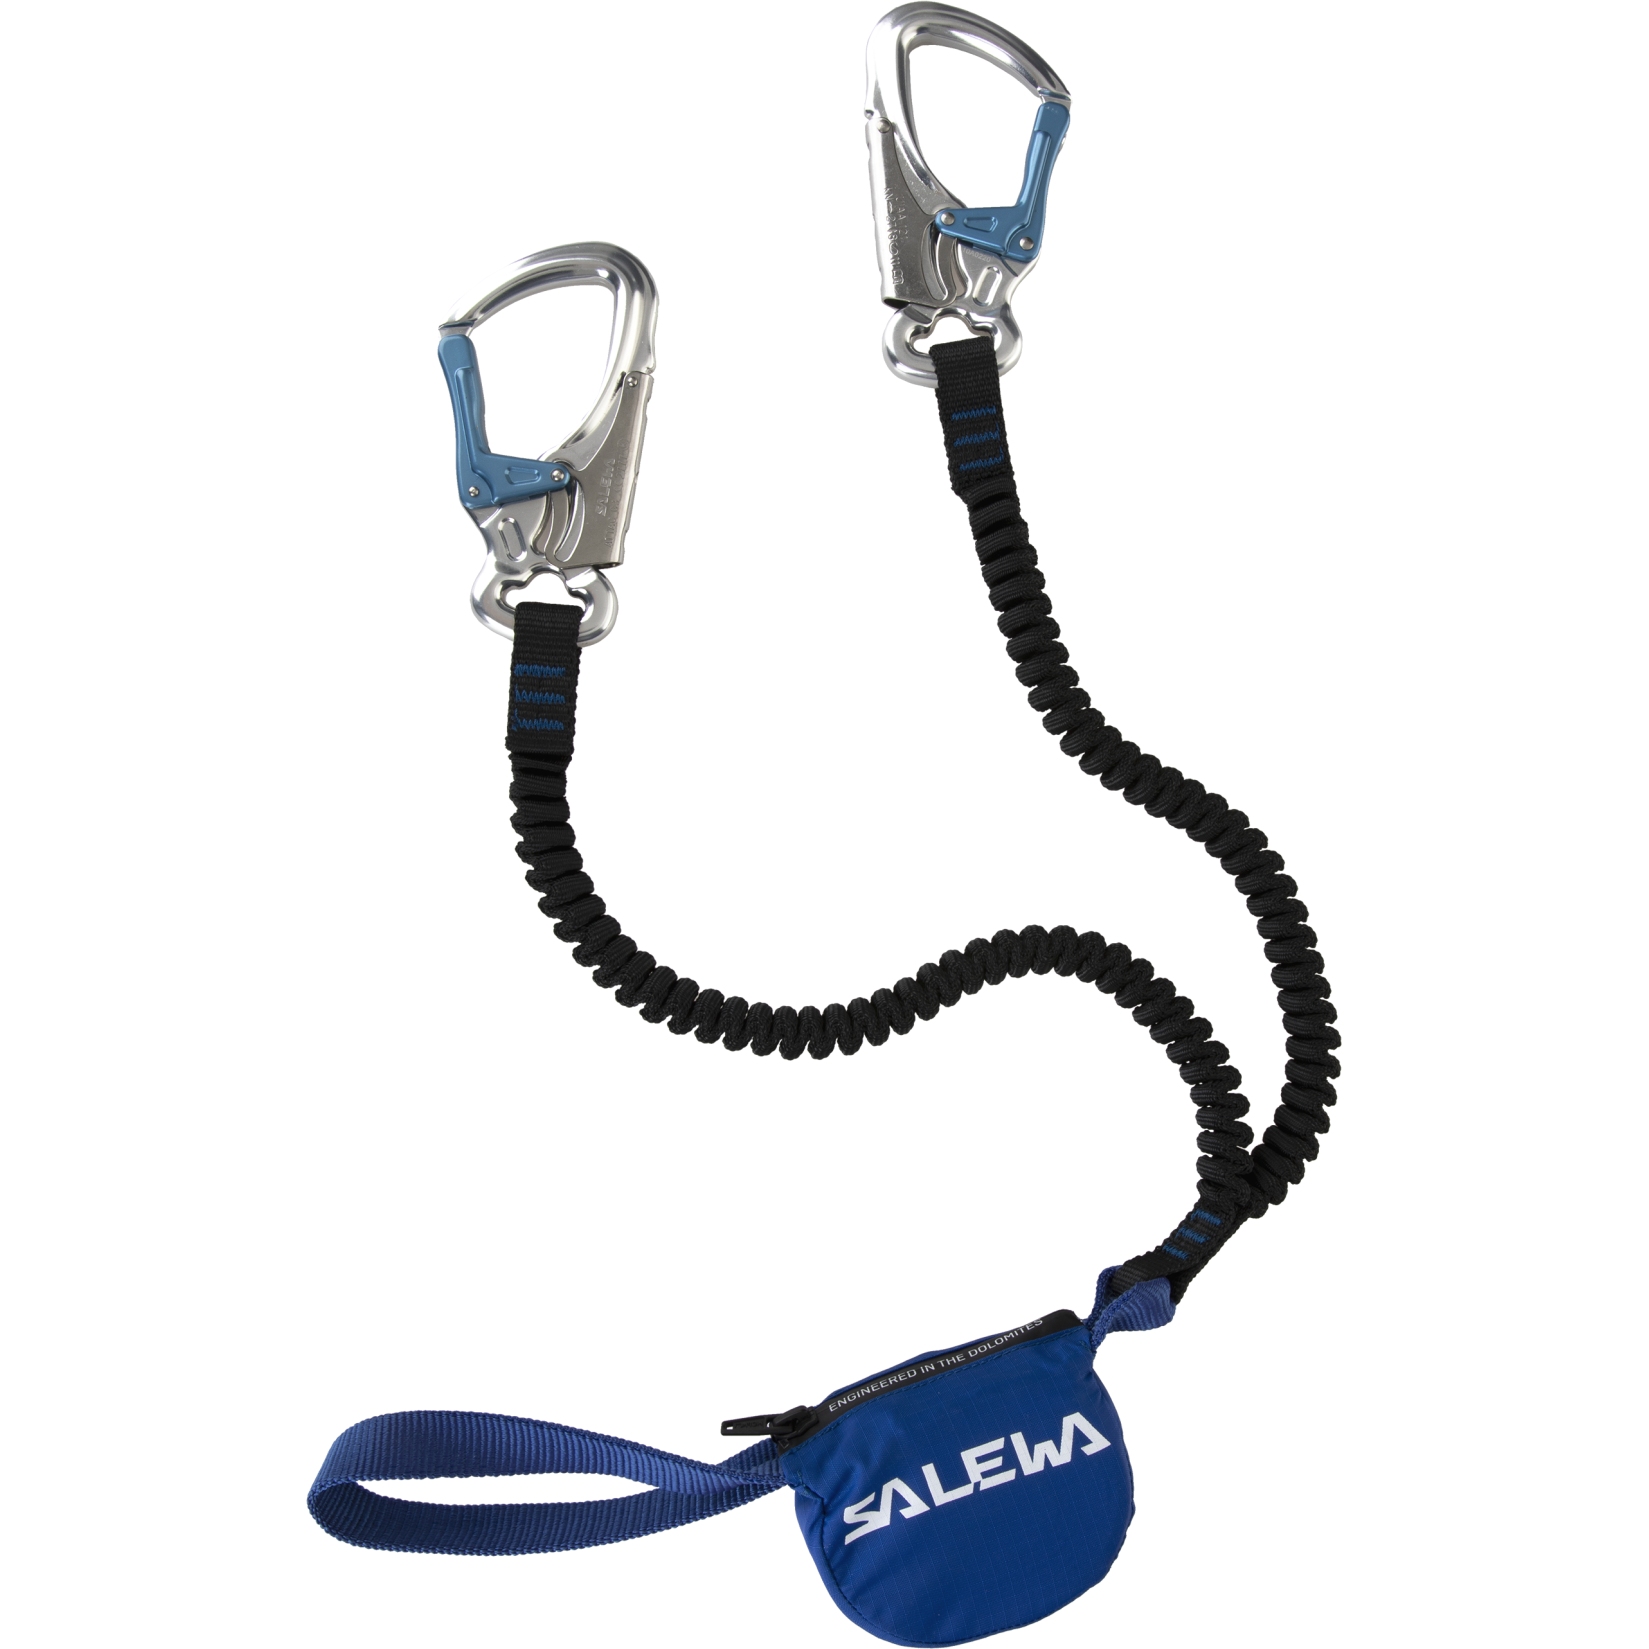 Produktbild von Salewa Premium Attac - Klettersteigset - schwarz/blau 956